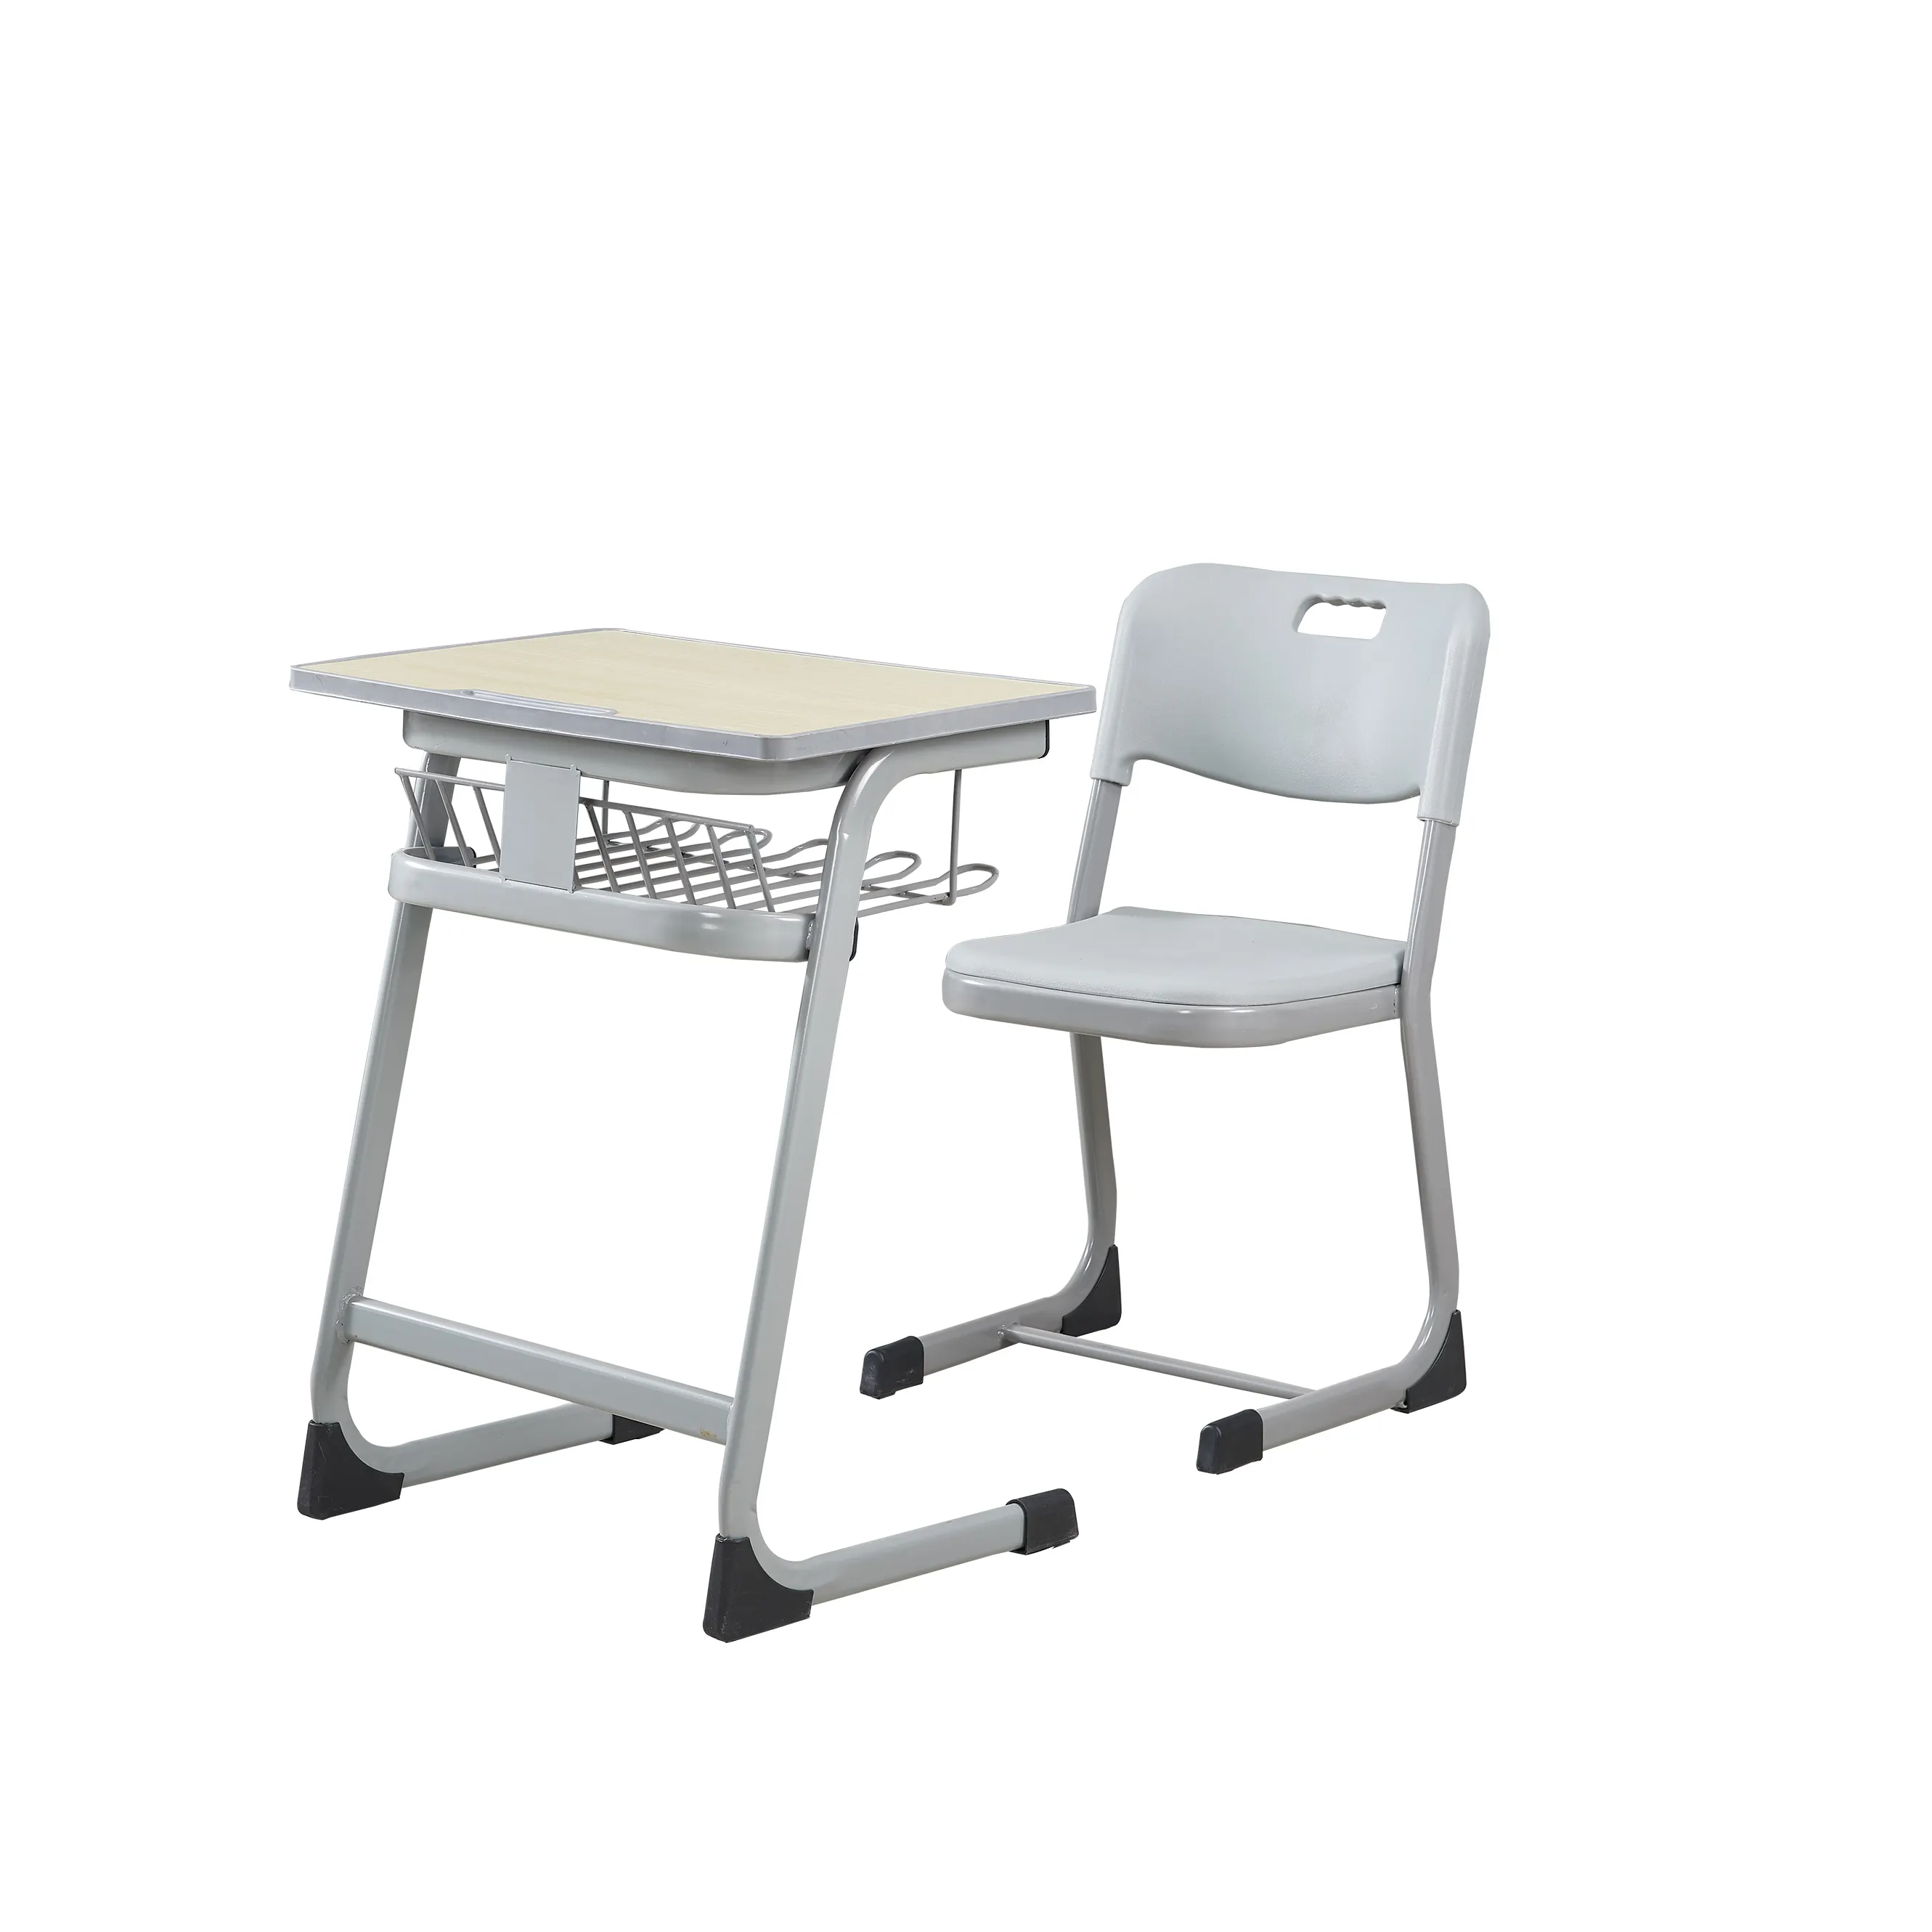 Alta qualità materiale Pp studente telaio in acciaio scrittura tavolo Top con comodo schienale della sedia